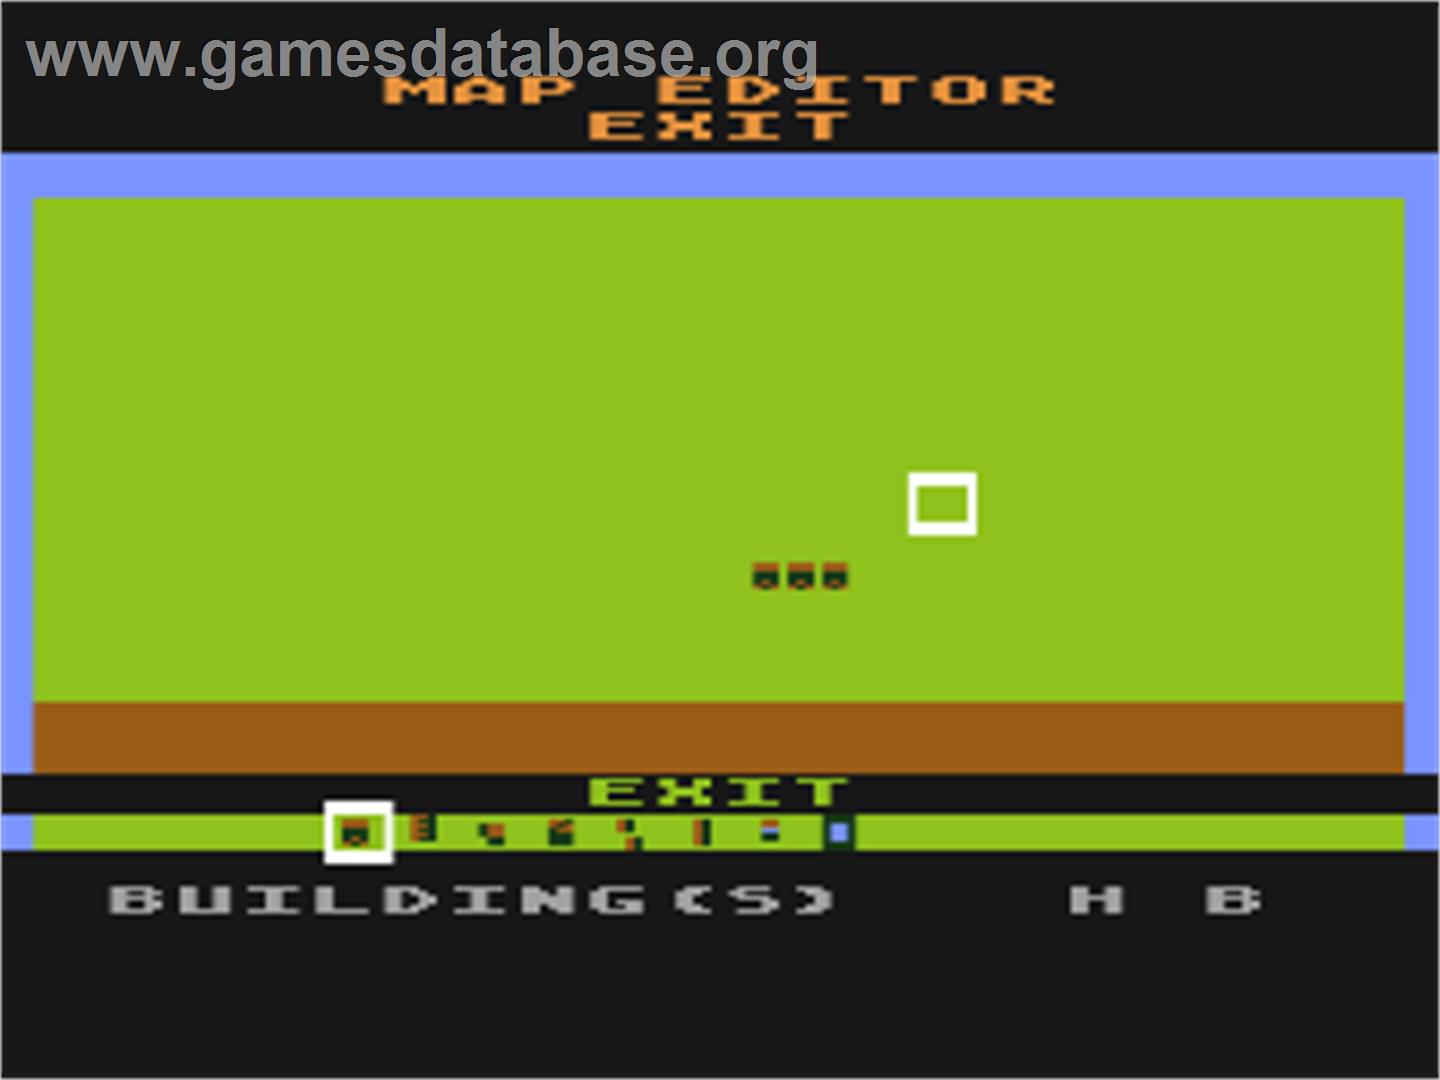 Wargame Construction Set - Atari 8-bit - Artwork - In Game